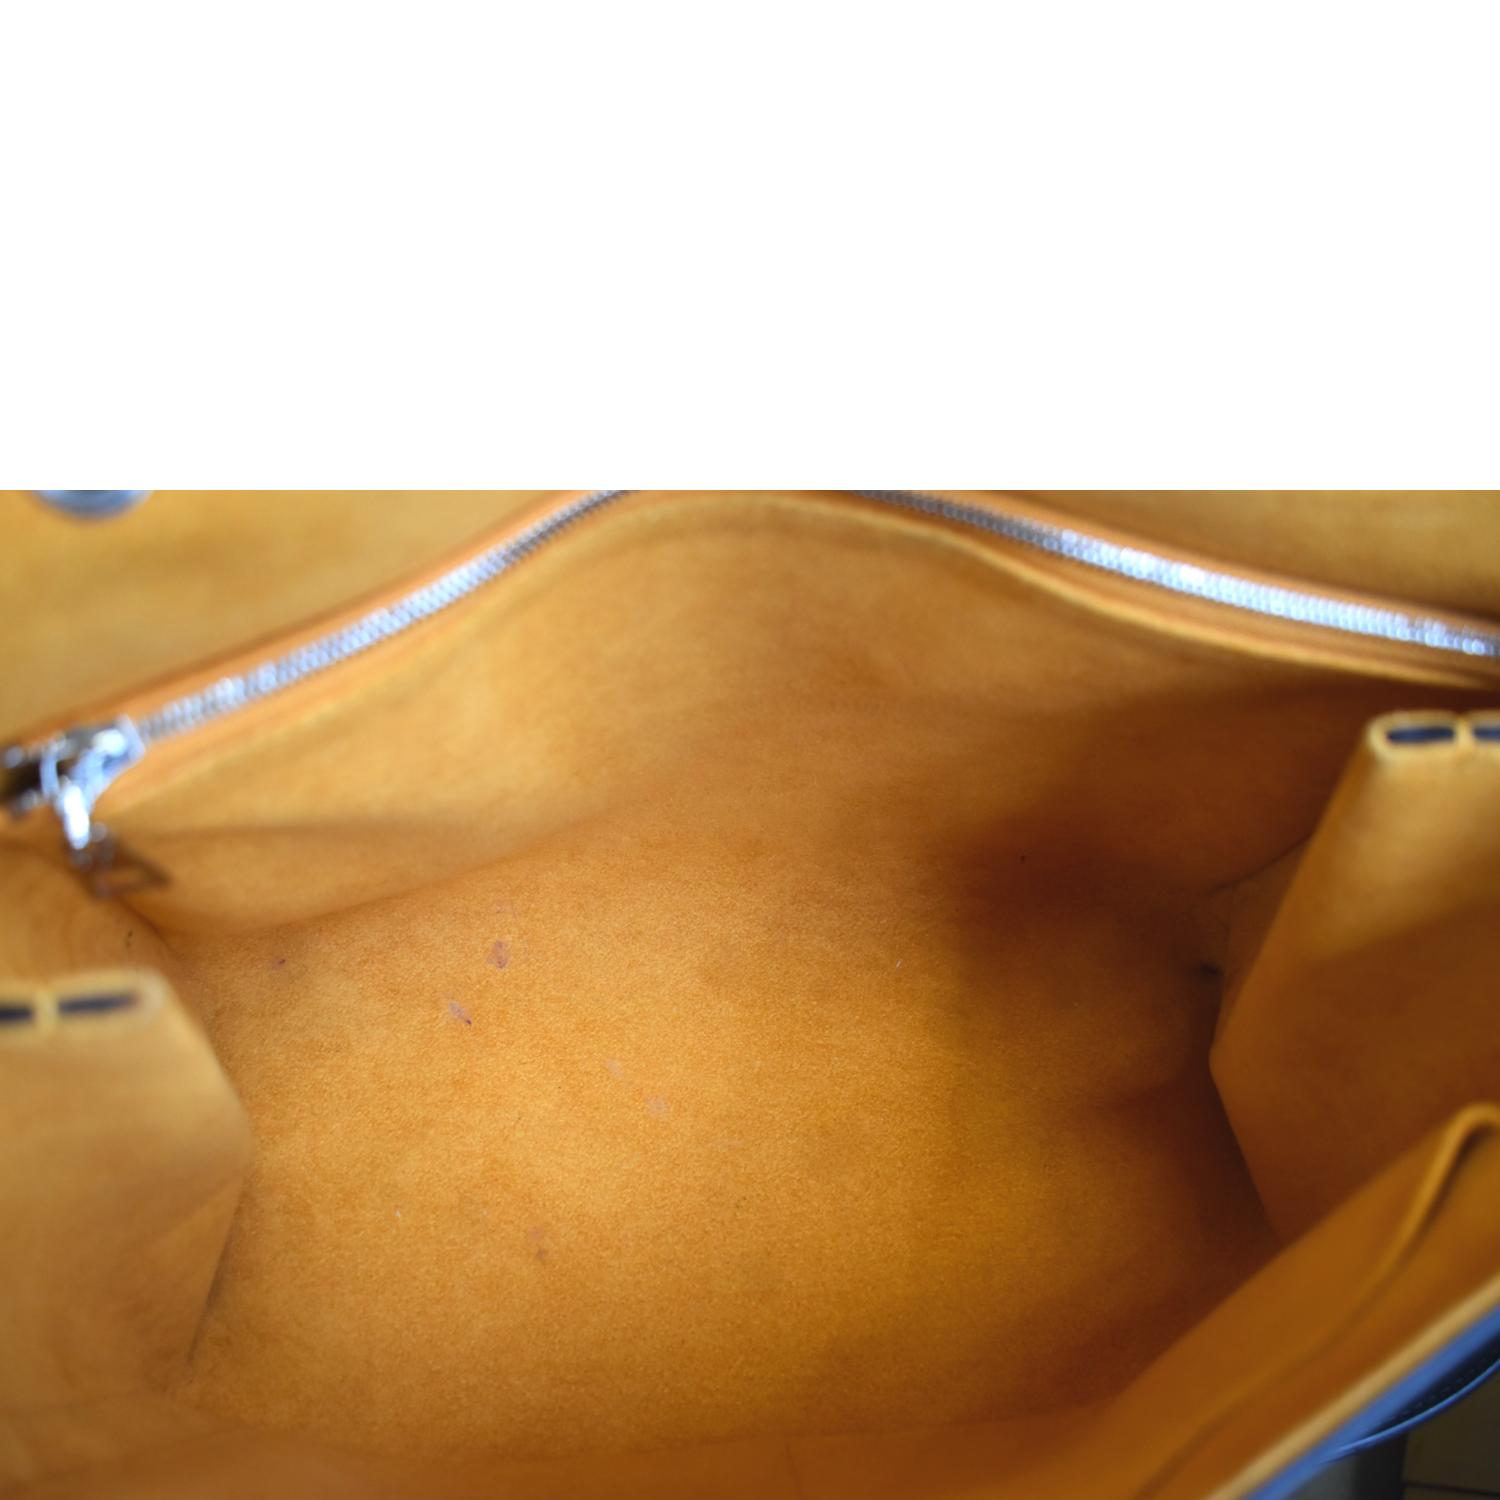 Túi xách LV nữ Louis Vuitton Grenelle PM Màu Trắng chính hãng